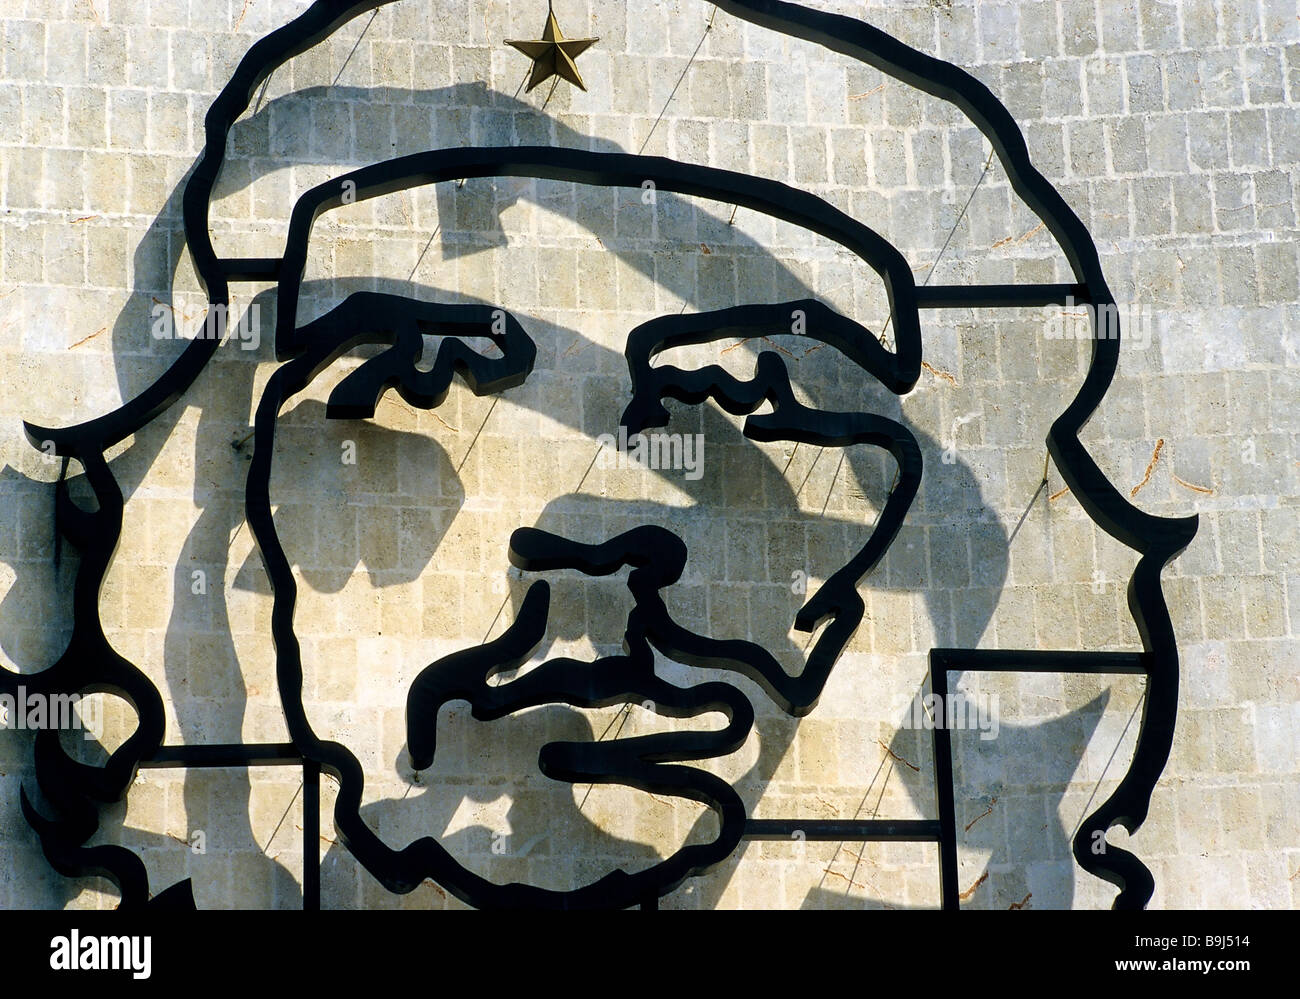 Large Che Guevara head painted on a building, Interior Ministry, Plaza de la Revolución, Vedado, Havana, Cuba, Caribbean Stock Photo